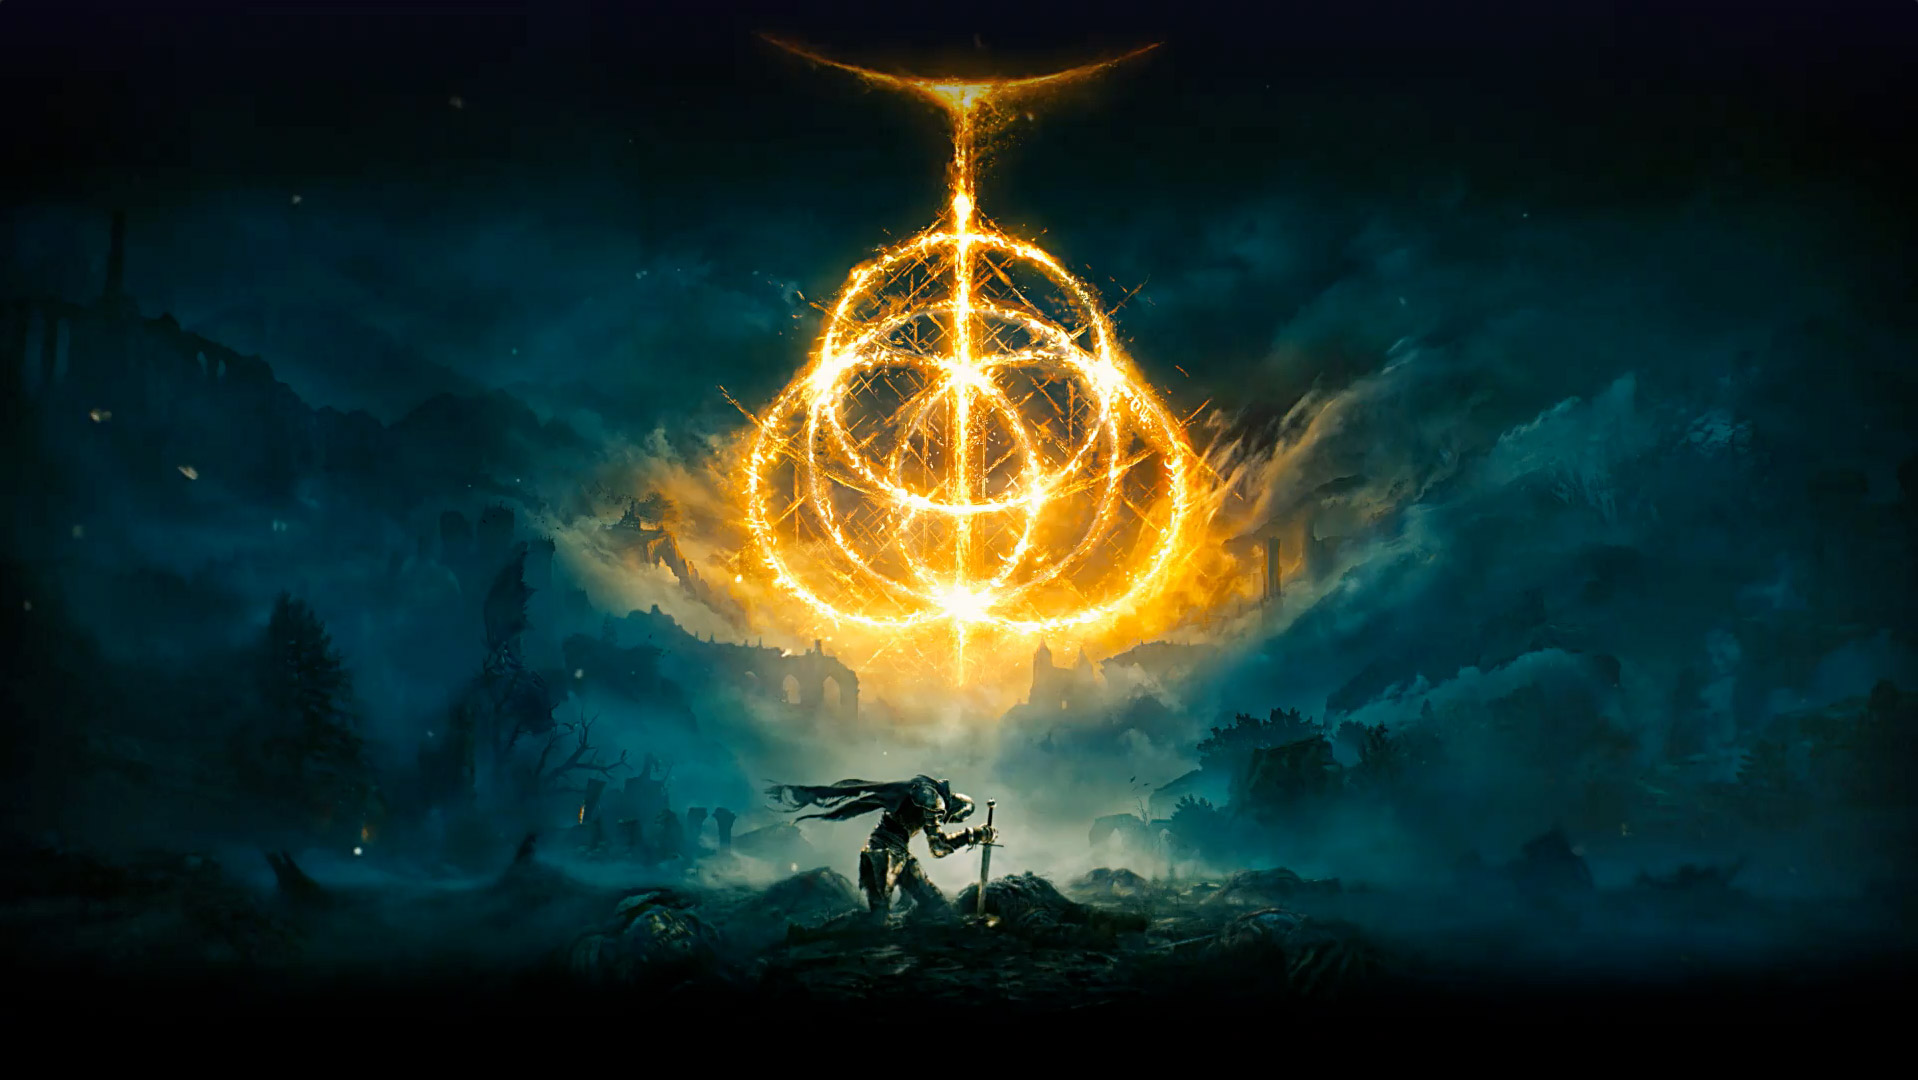 Elden Ring. Vários anéis de fogo criando o símbolo do Elden Ring. Personagem cavaleiro com sua espada no chão em uma área desolada com neblina.